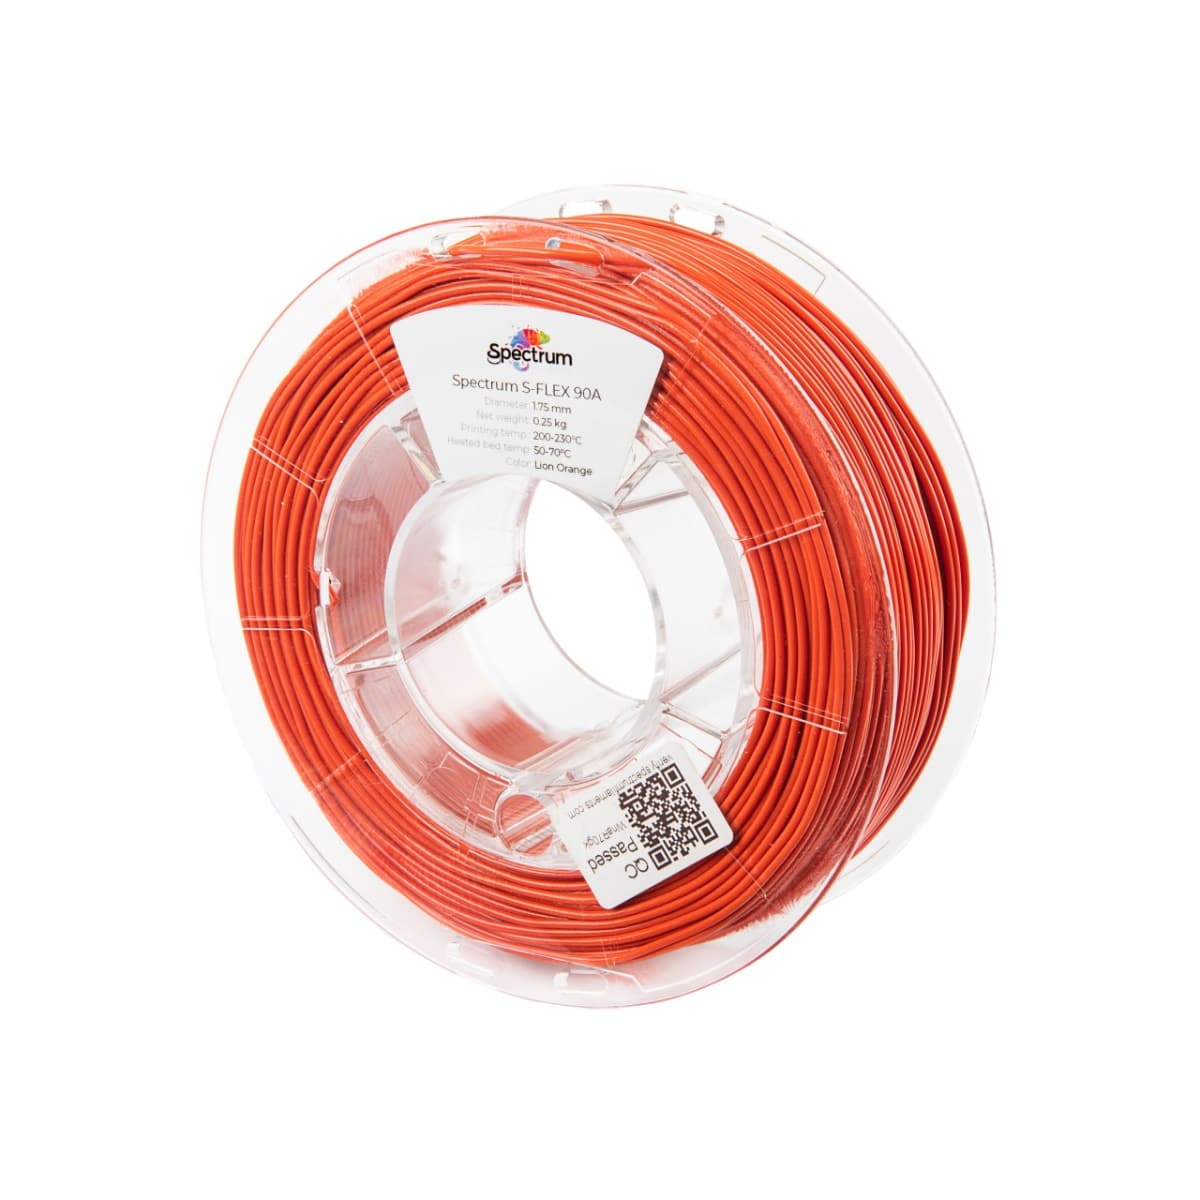 Køb Spectrum Filaments - S-Flex 90A - 1.75mm - Lion Orange - 0.25kg - Pris 140.00 kr.